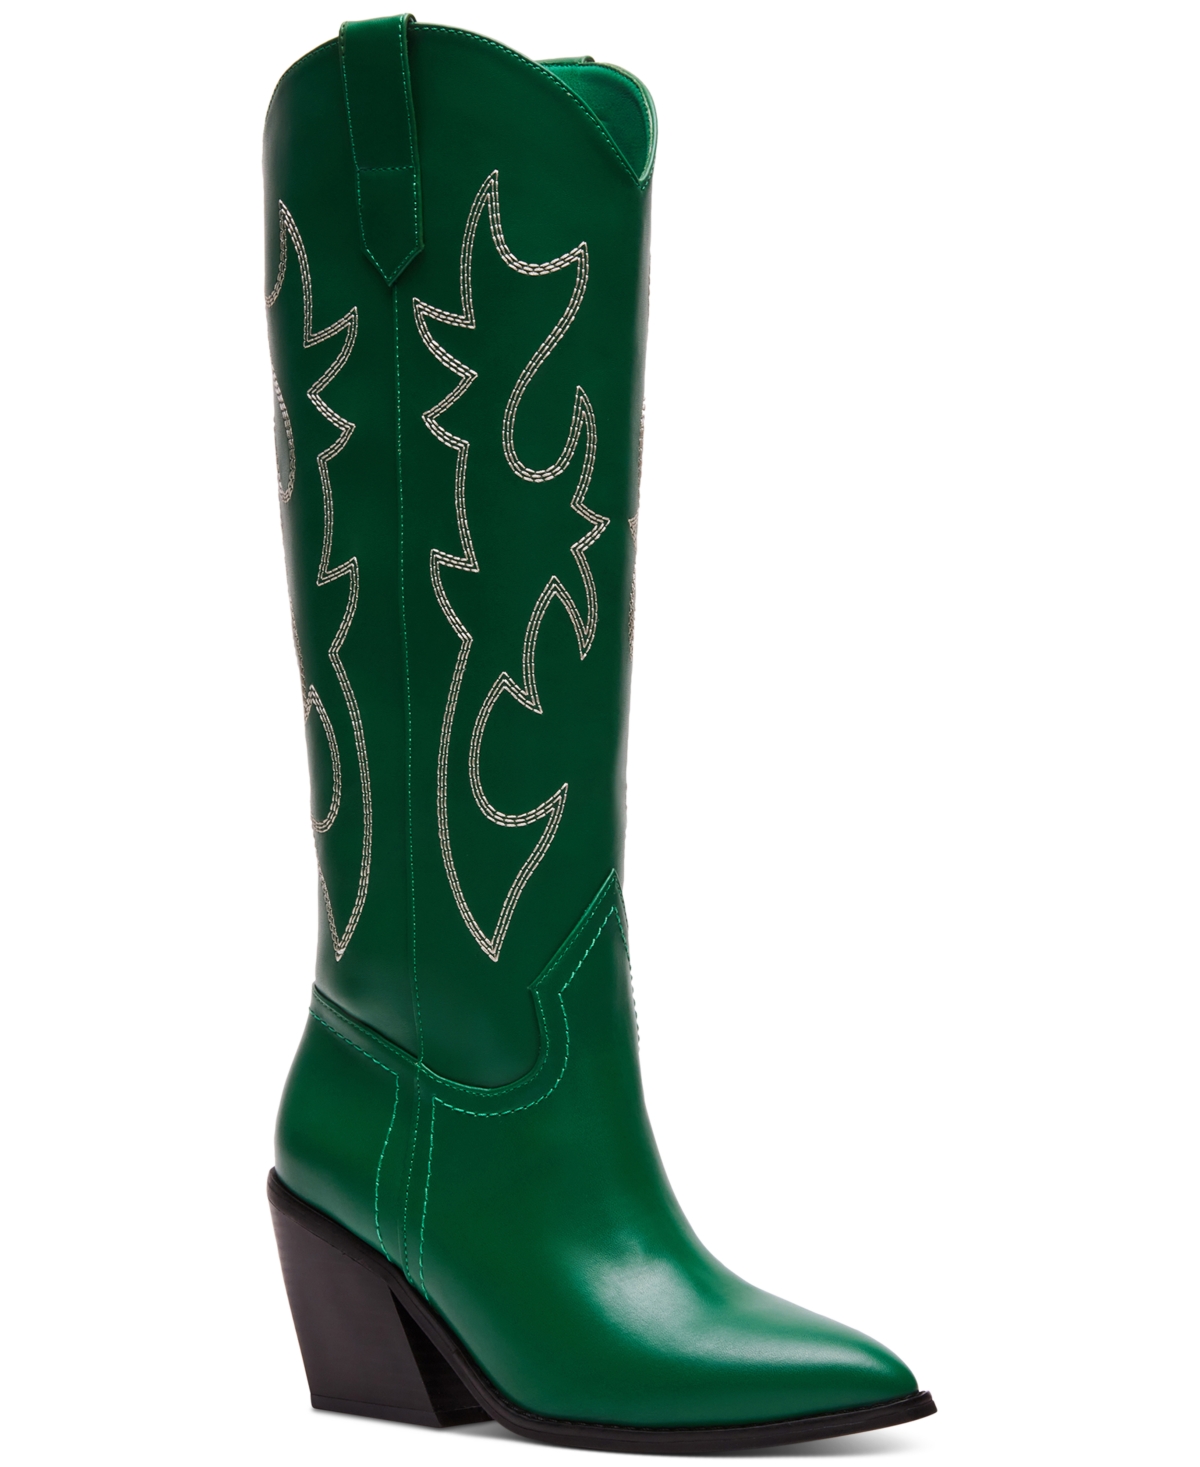 Arizona Knee High Cowboy Boots - Green Smooth